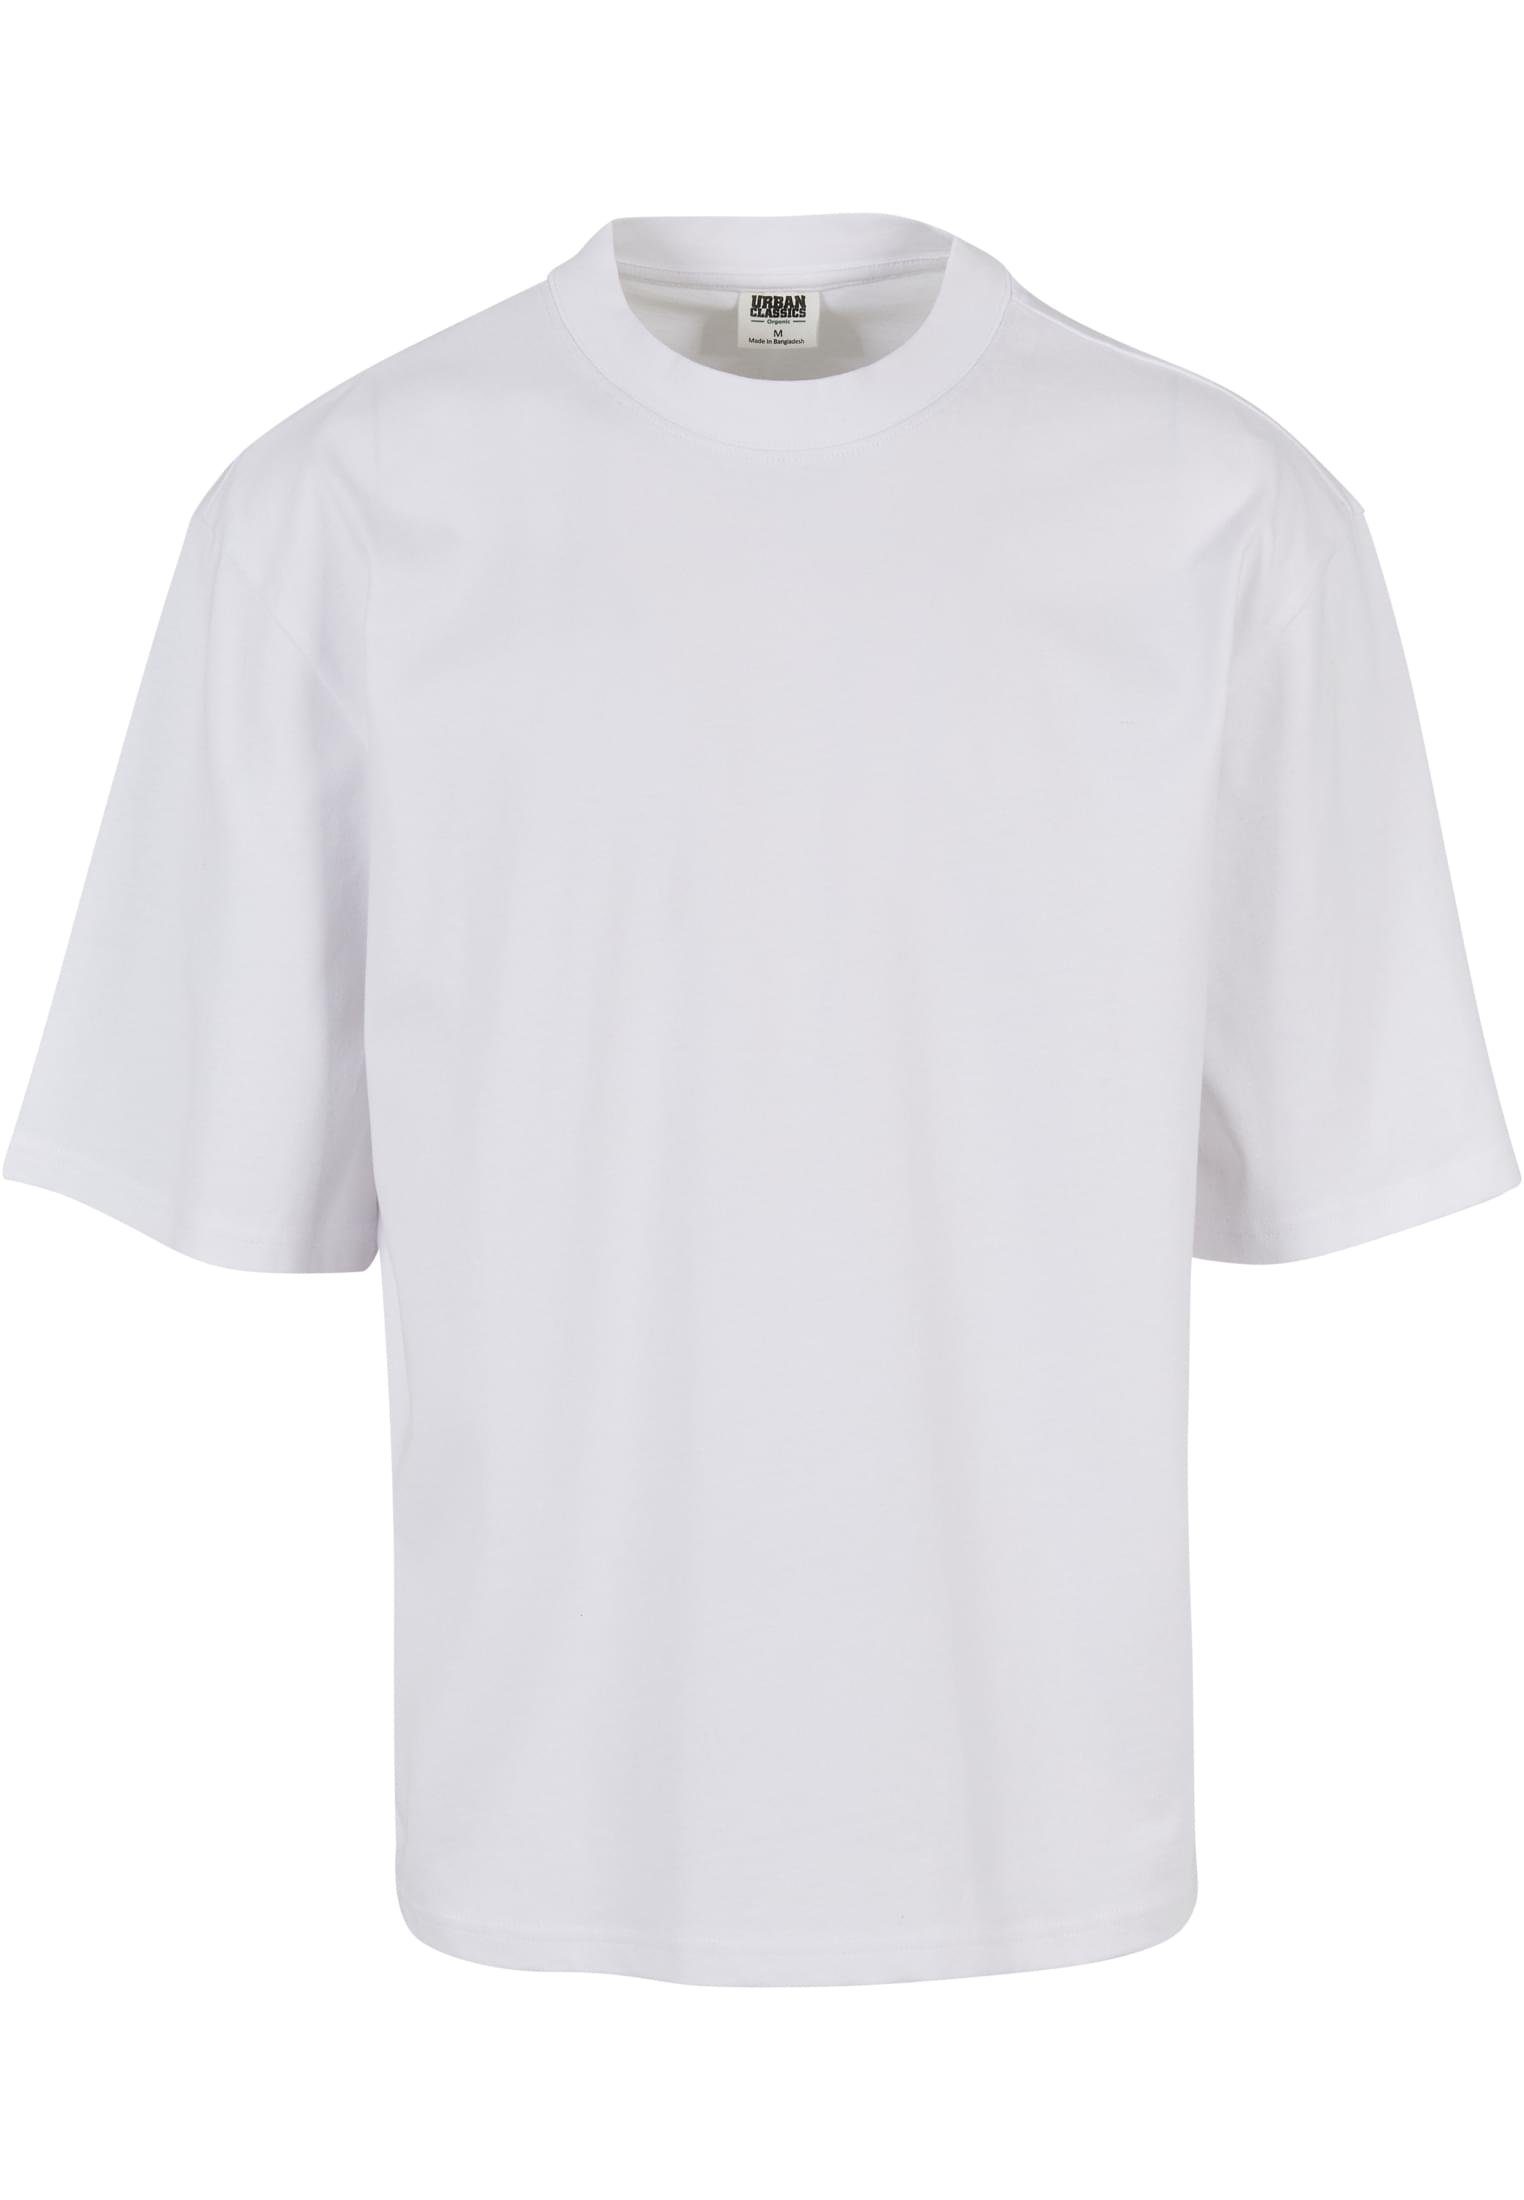 Brandit Shirts online kaufen | OTTO